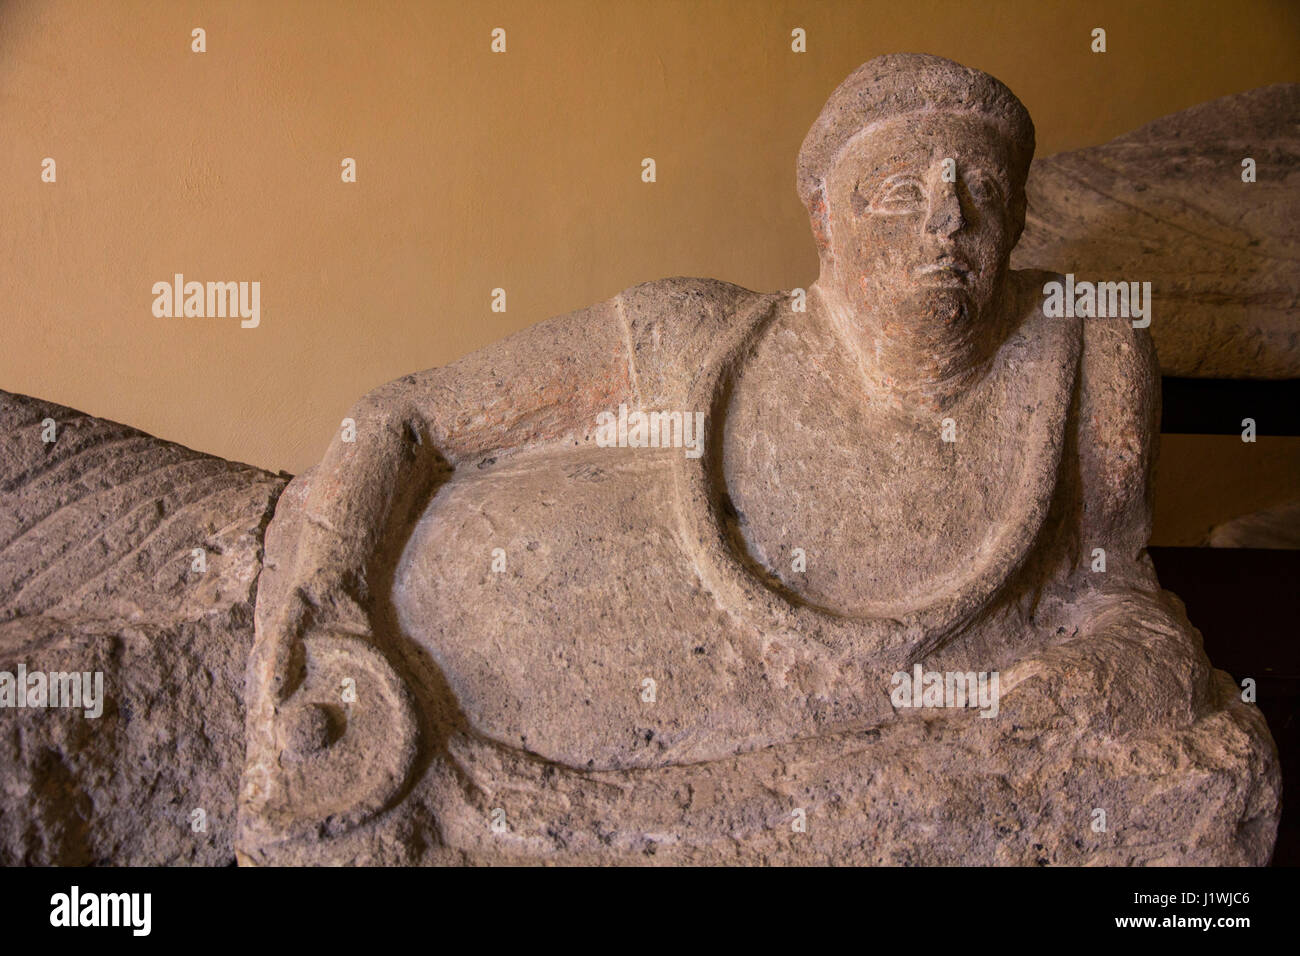 Presso il Museo Archeologico Nazionale di Tarquinia, i visitatori possono esaminare da vicino una splendida collezione di marmo e alabastro sacrophagi etrusca. Th Foto Stock